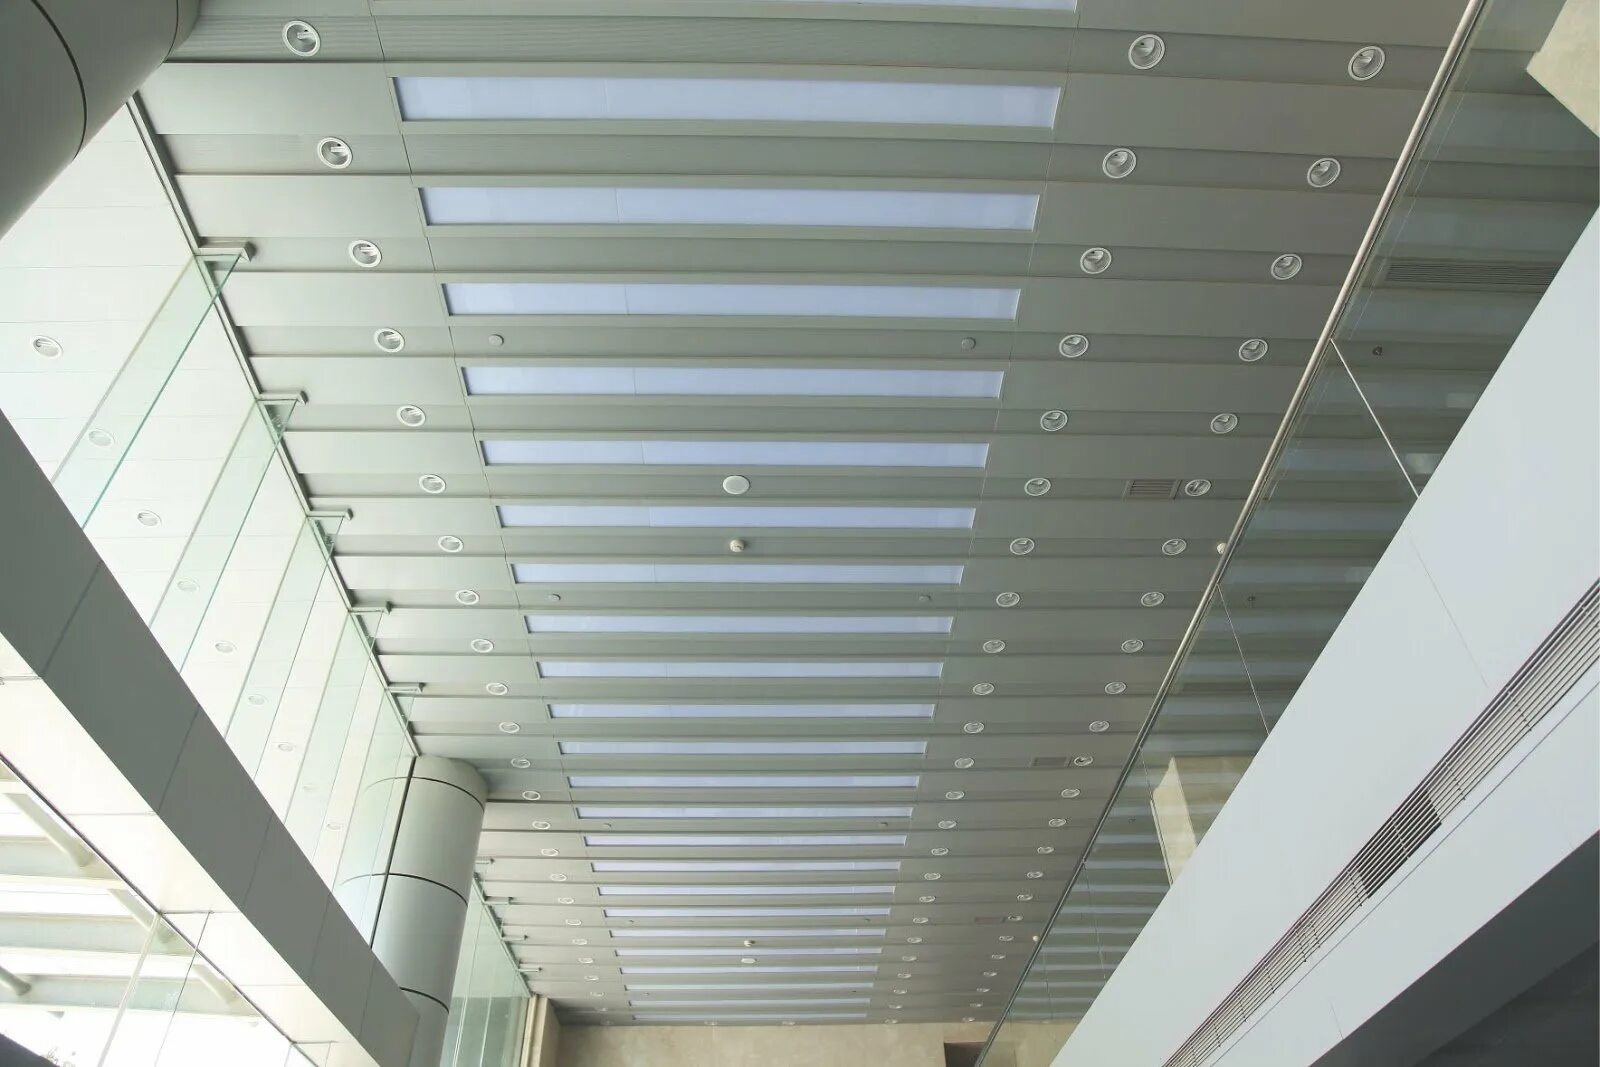 Алюминиевый подвесной потолок купить. Подвесной реечный потолок Албес. Реечный потолок Армстронг. Подвесной алюминиевый кассетный потолок 600х600 ("Албес" или аналог). Geipel реечный потолок.